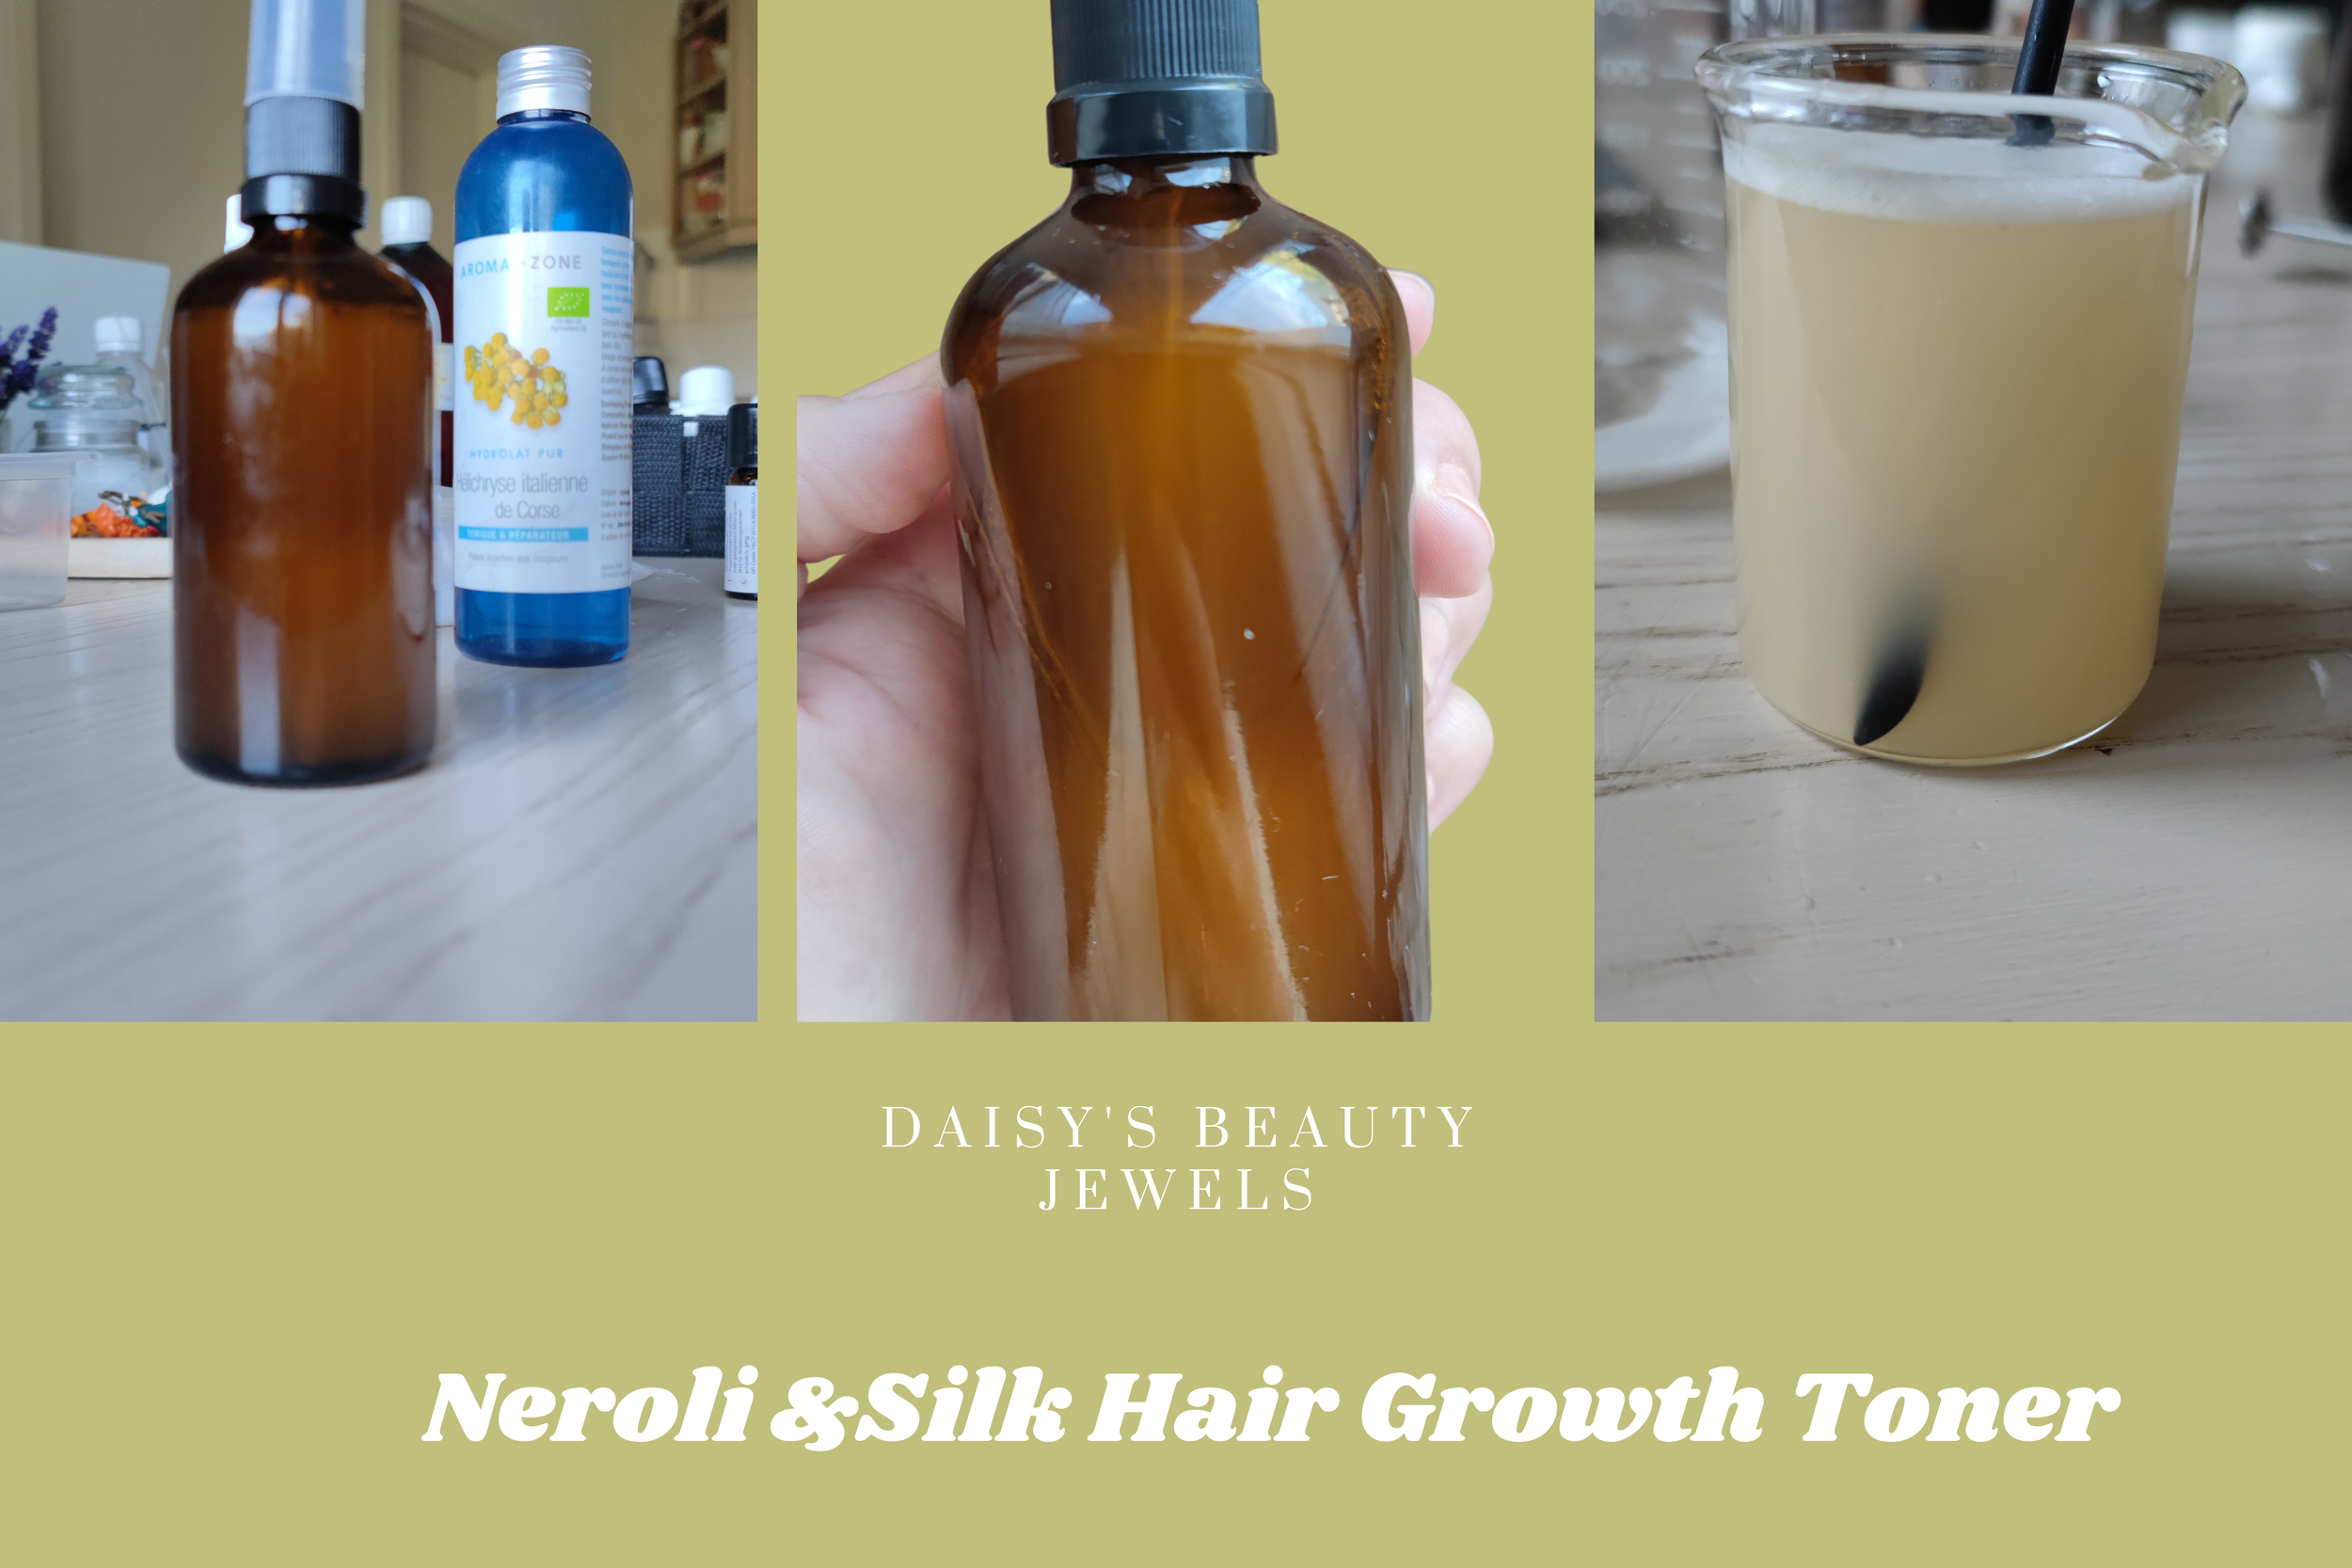 Hair Growth Treatment. Hair Growth Toner — DAISY'S BEAUTY JEWELS